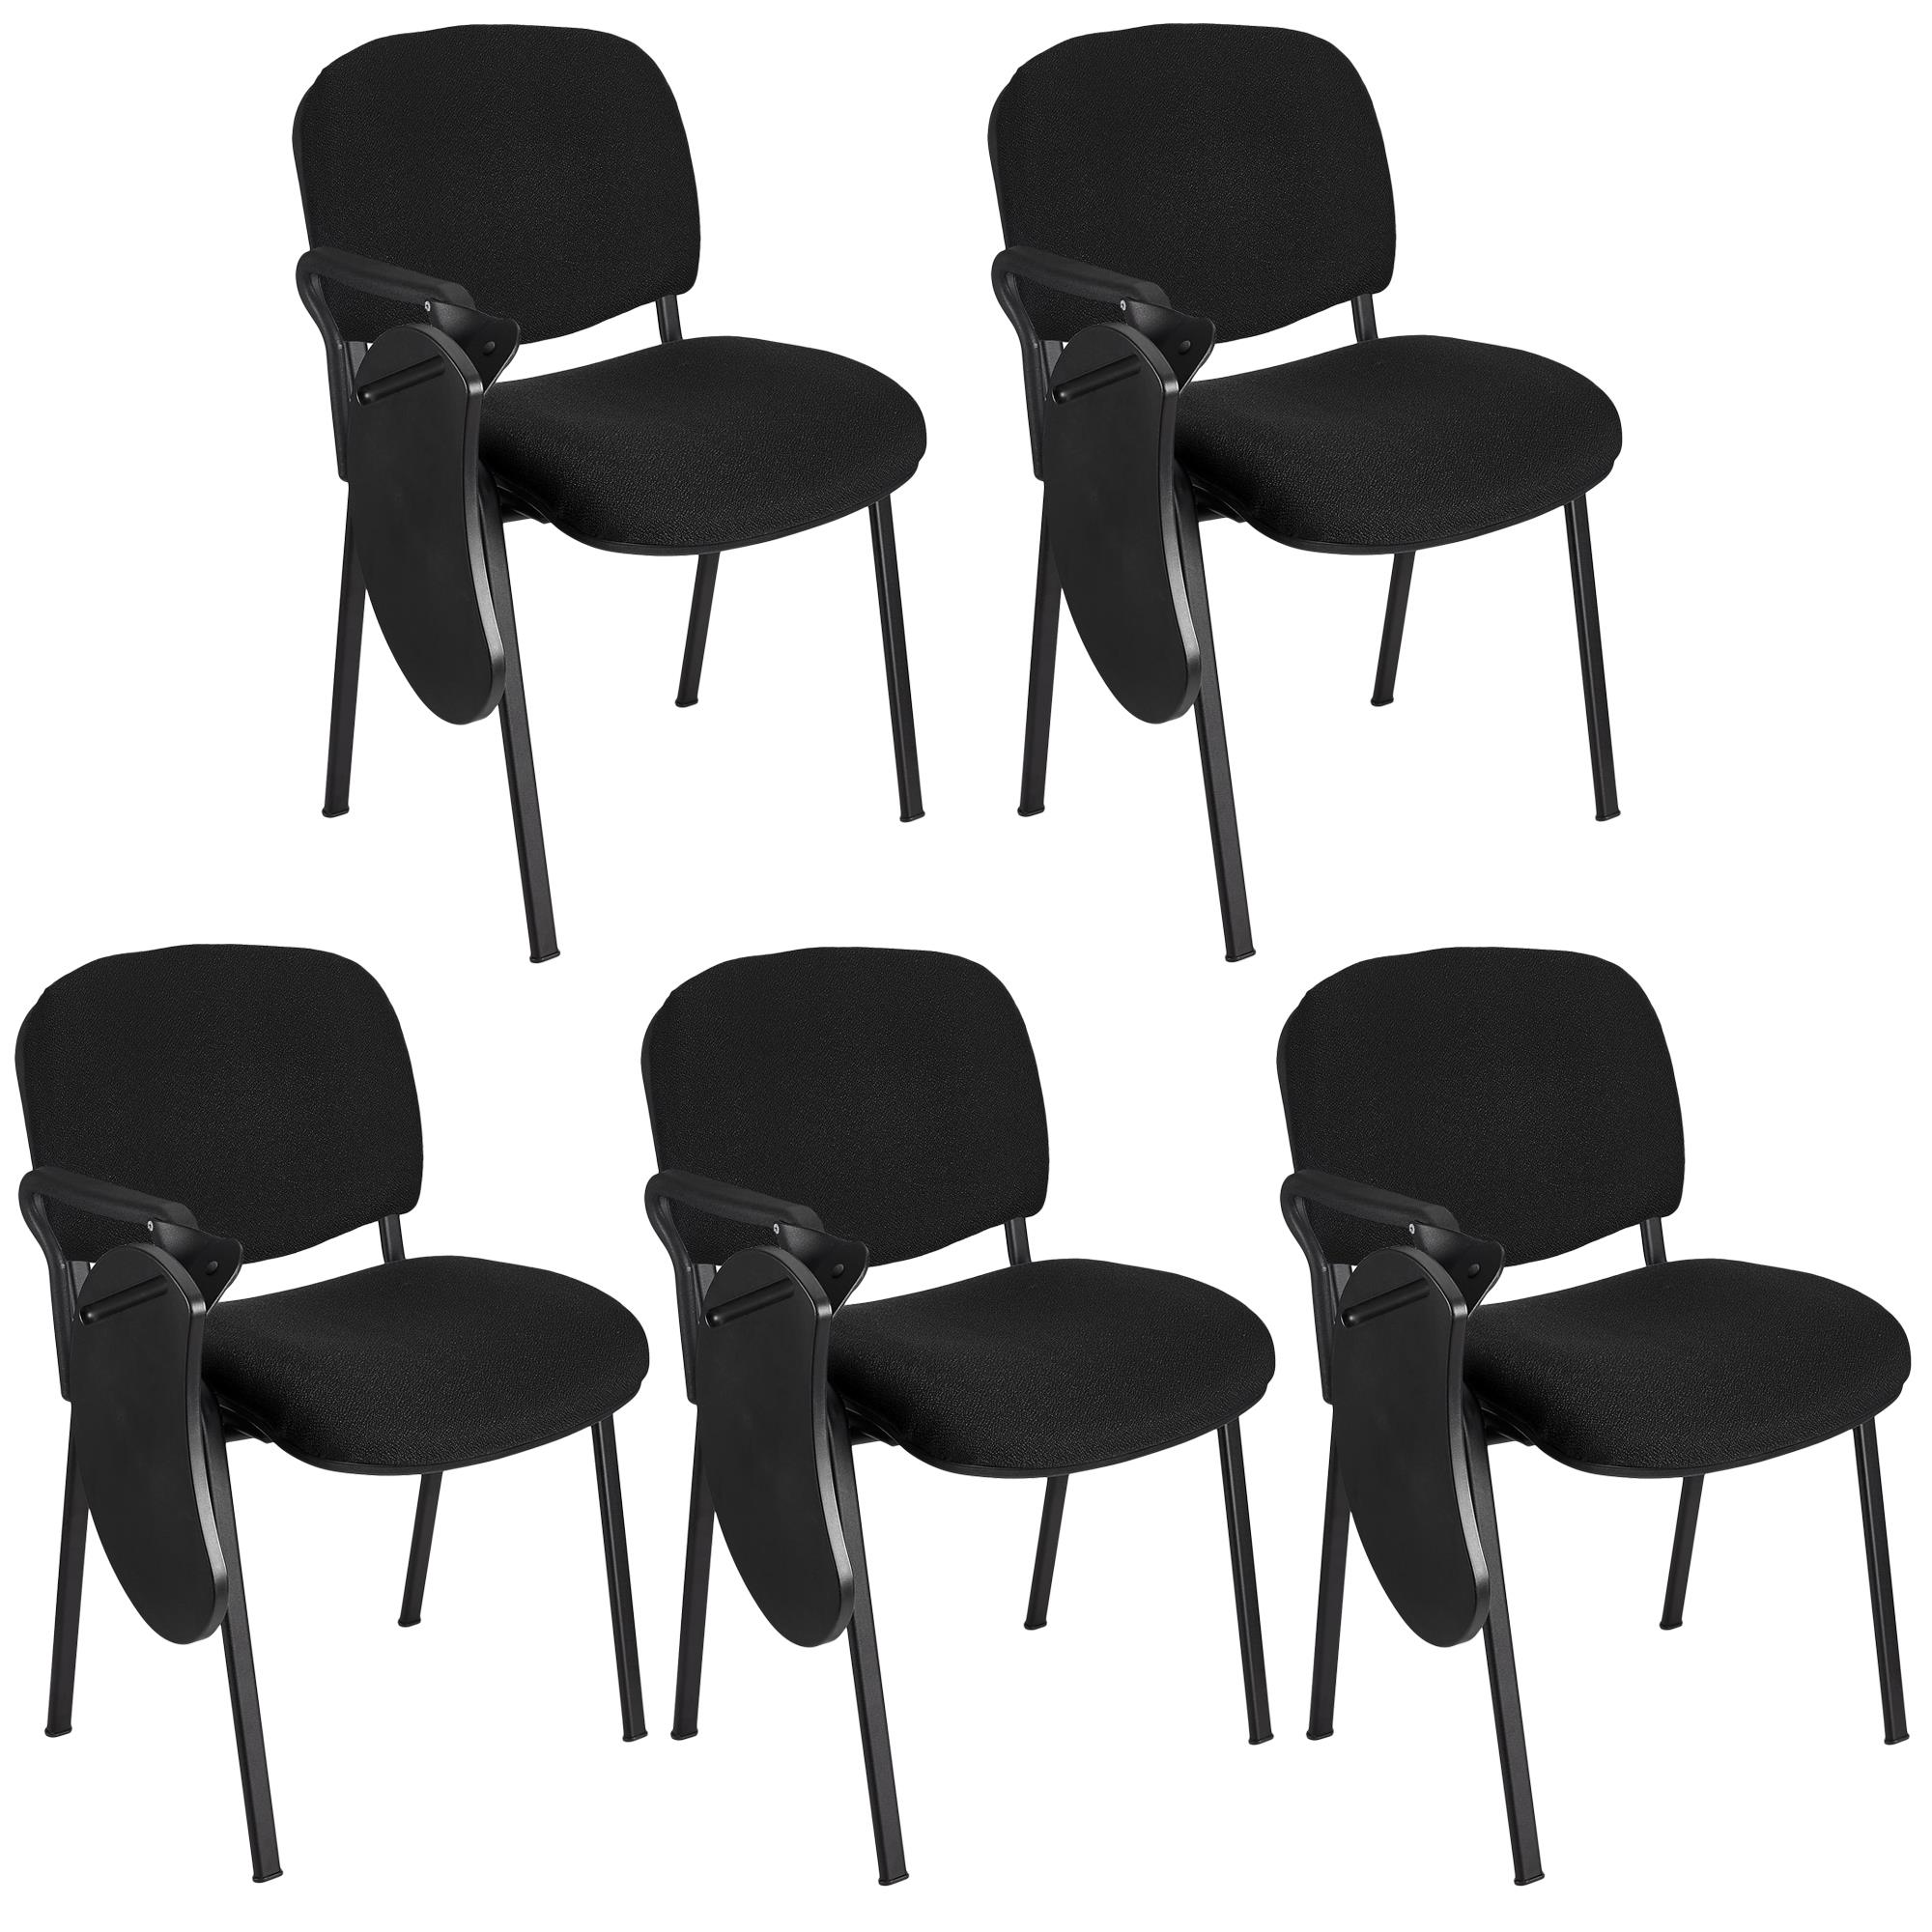 Lote 5 Cadeiras de Visita MOBY COM PALMATÓRIA, Confortável, Pernas Pretas, Cor Preto